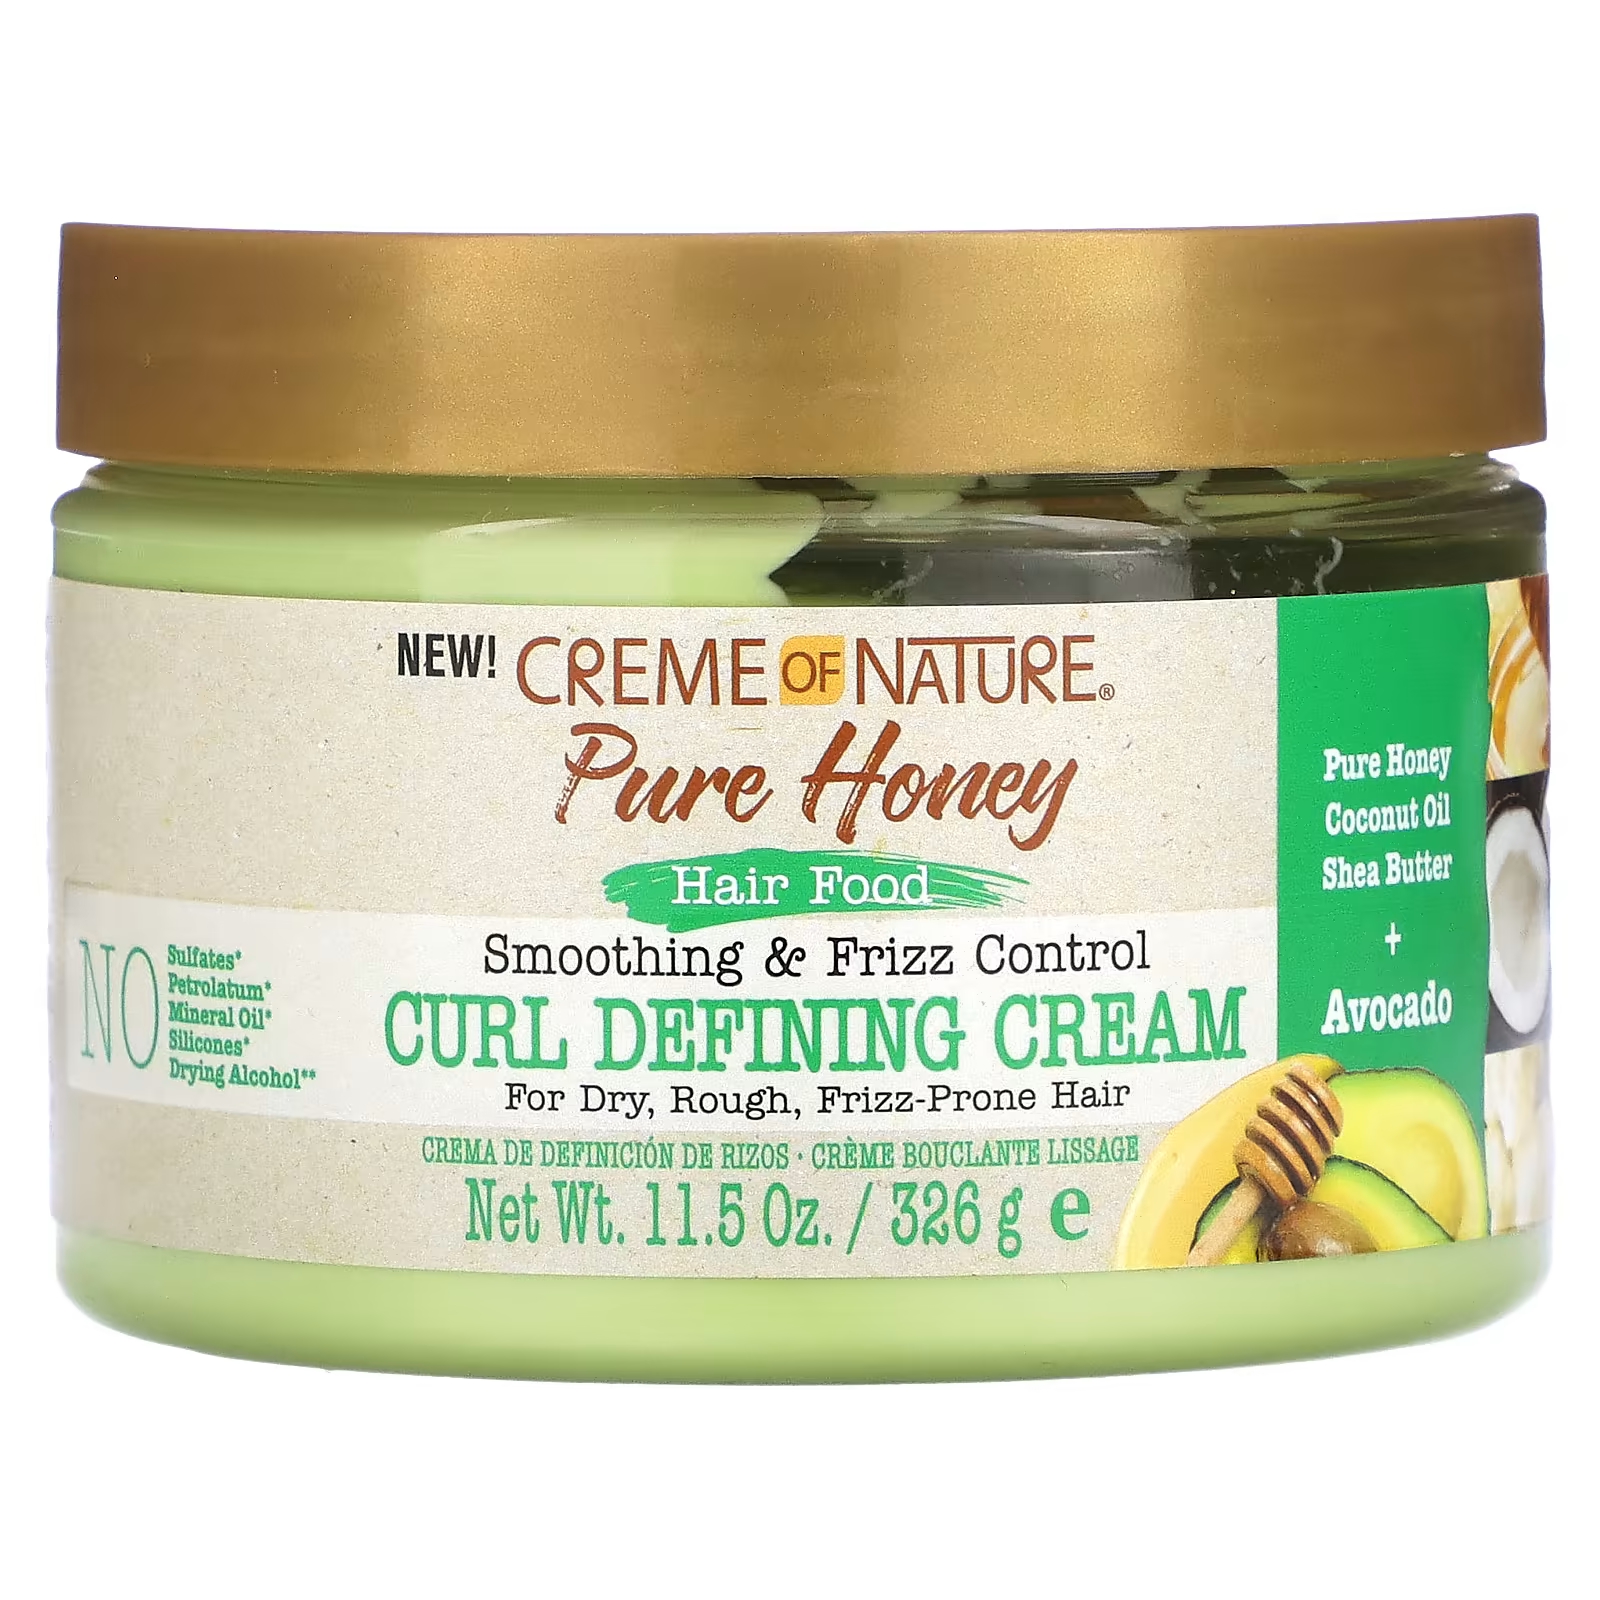 Крем для разглаживания и контроля вьющихся волос Creme Of Nature Pure Honey определяющий кудри, 326 г inecto питательное масло для волос авокадо 3 3 жидких унции 100 мл